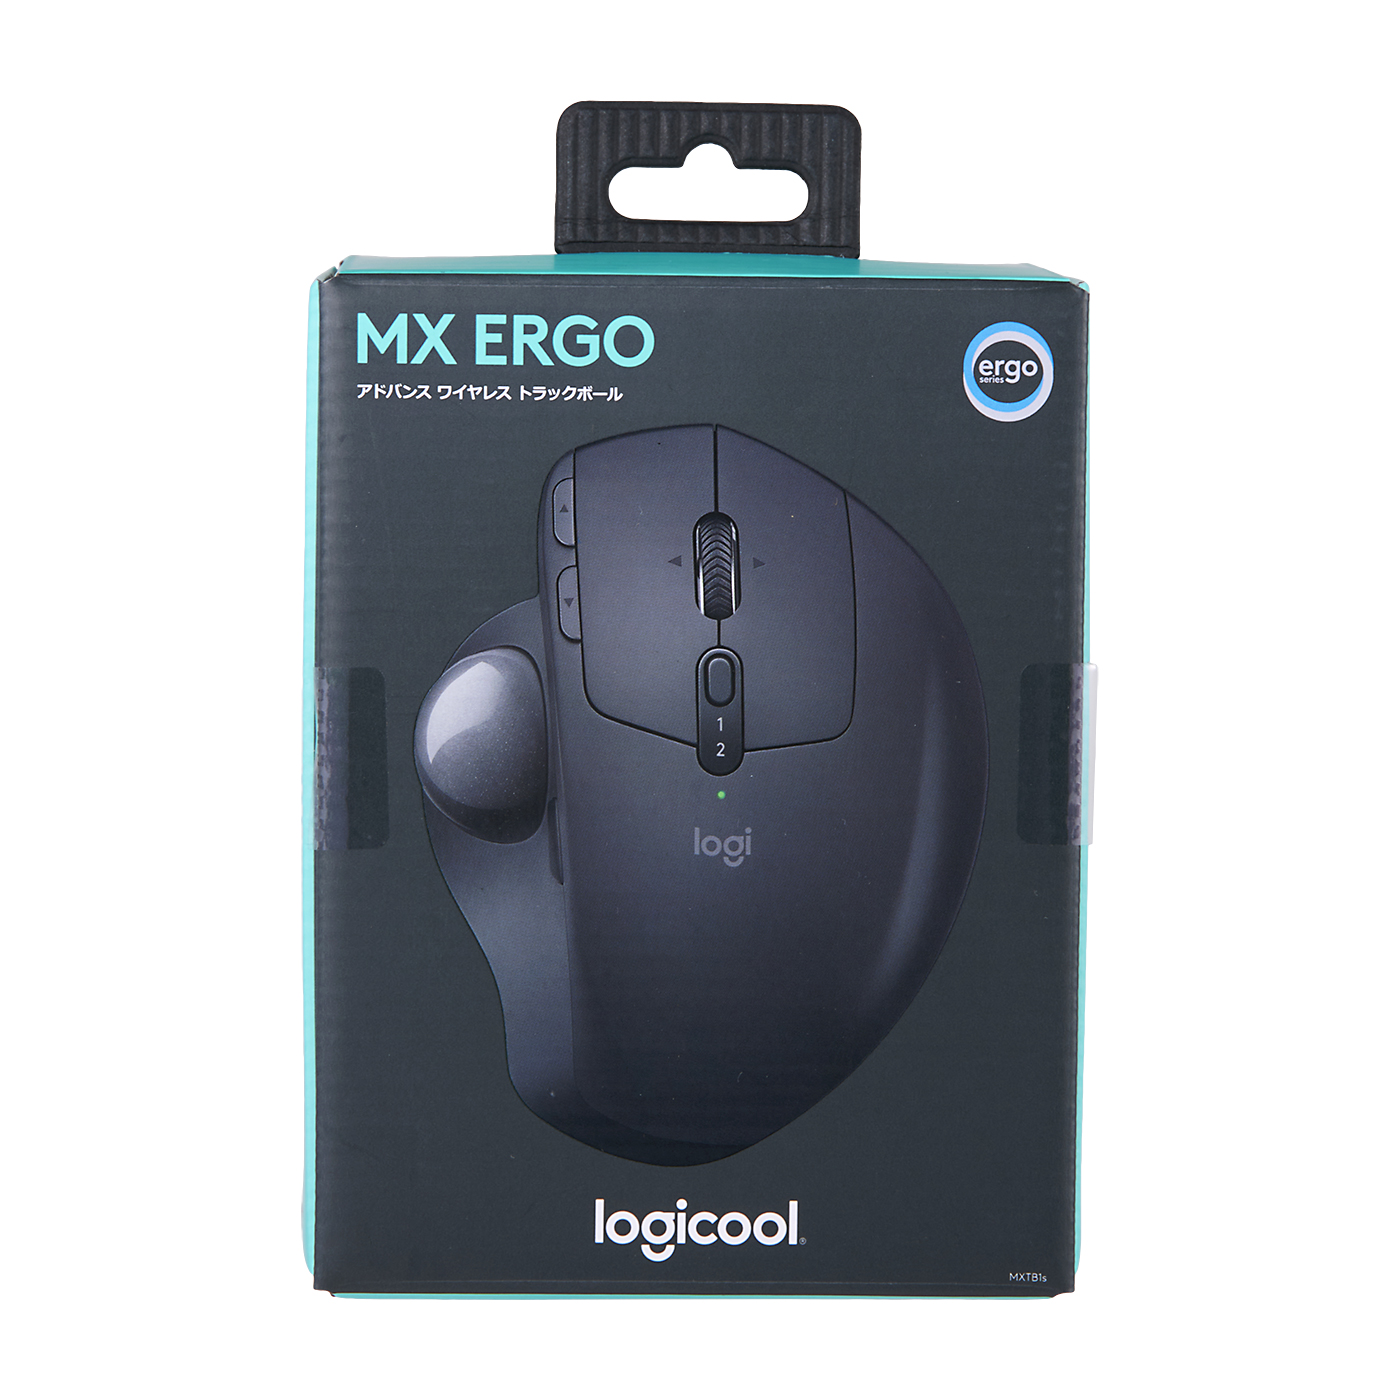 【日本一掃】MX ERGO Logicool MXTB1S マウス・トラックボール